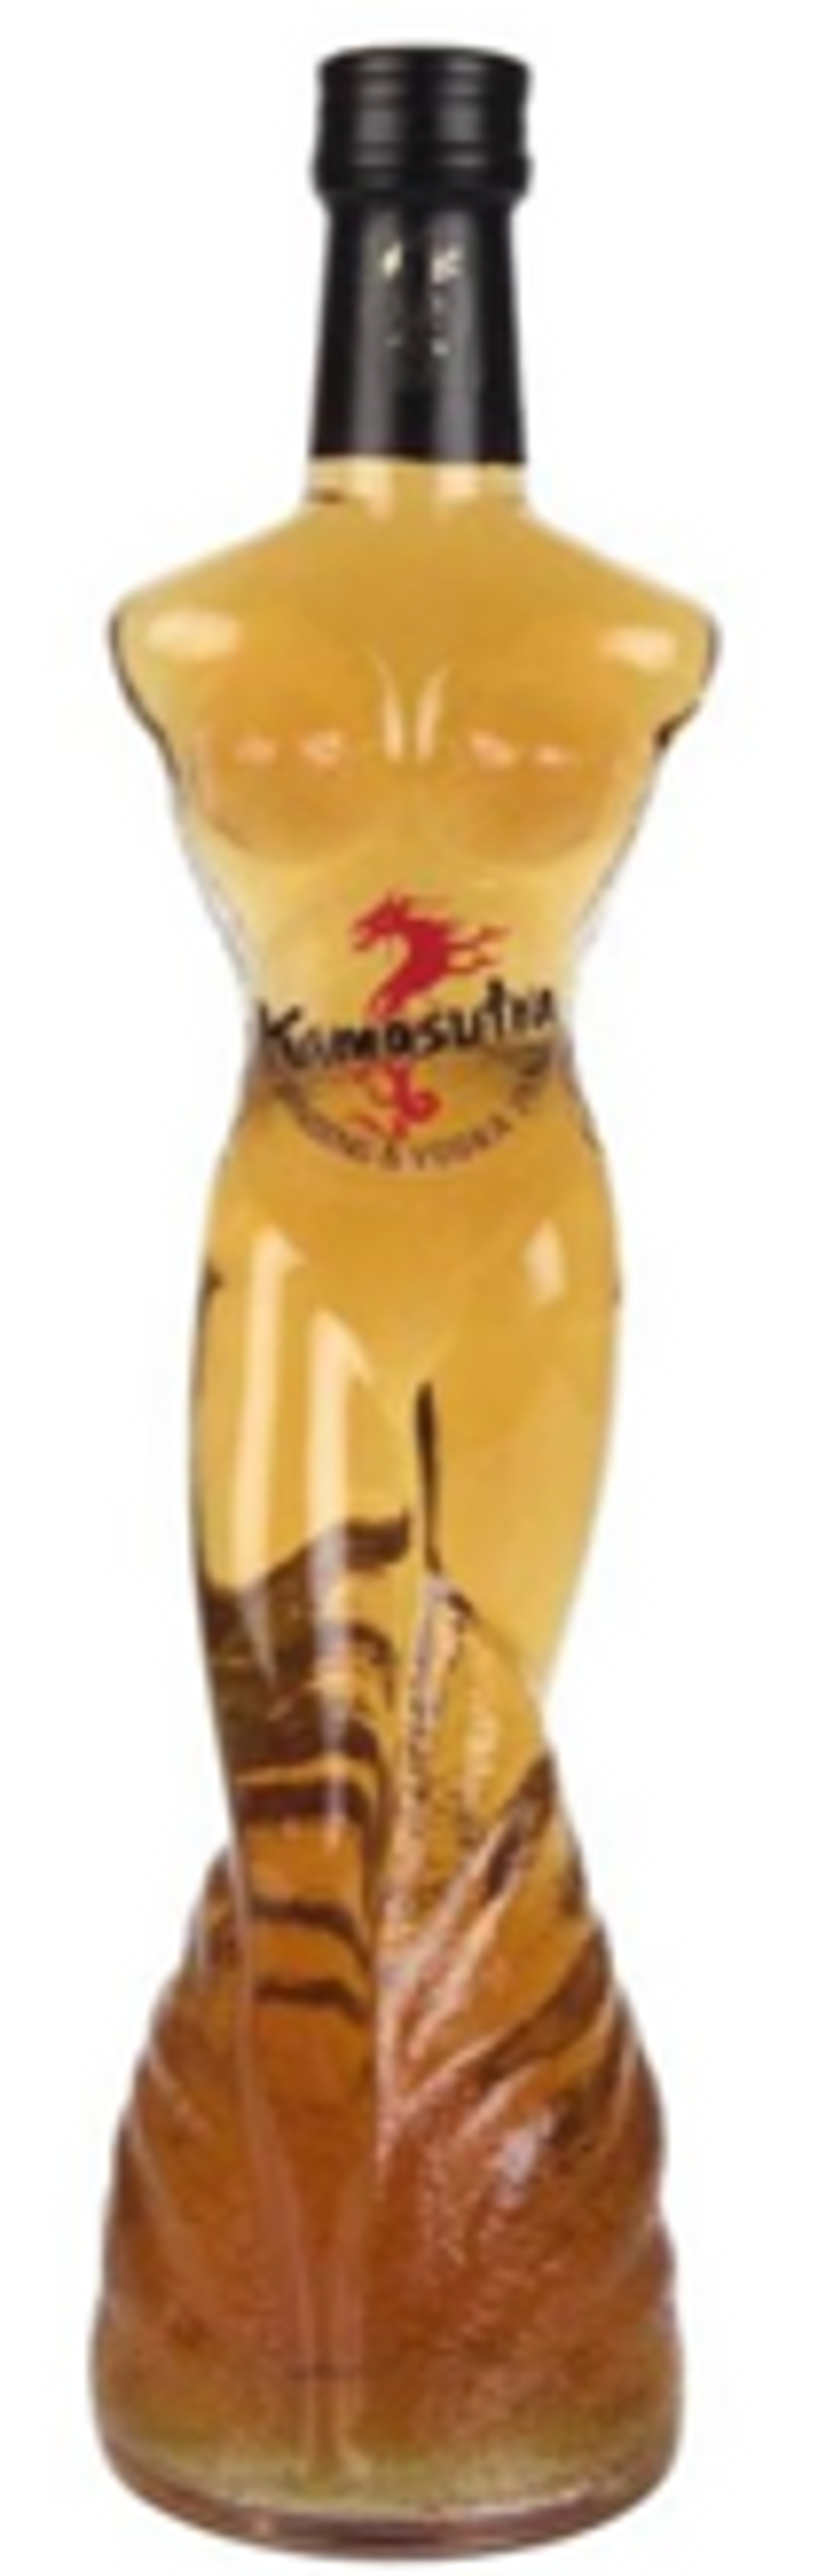 Kamasutra Ginseng & Vodka 0,5l, alc. 25 Vol.-%, Wodka-Likör